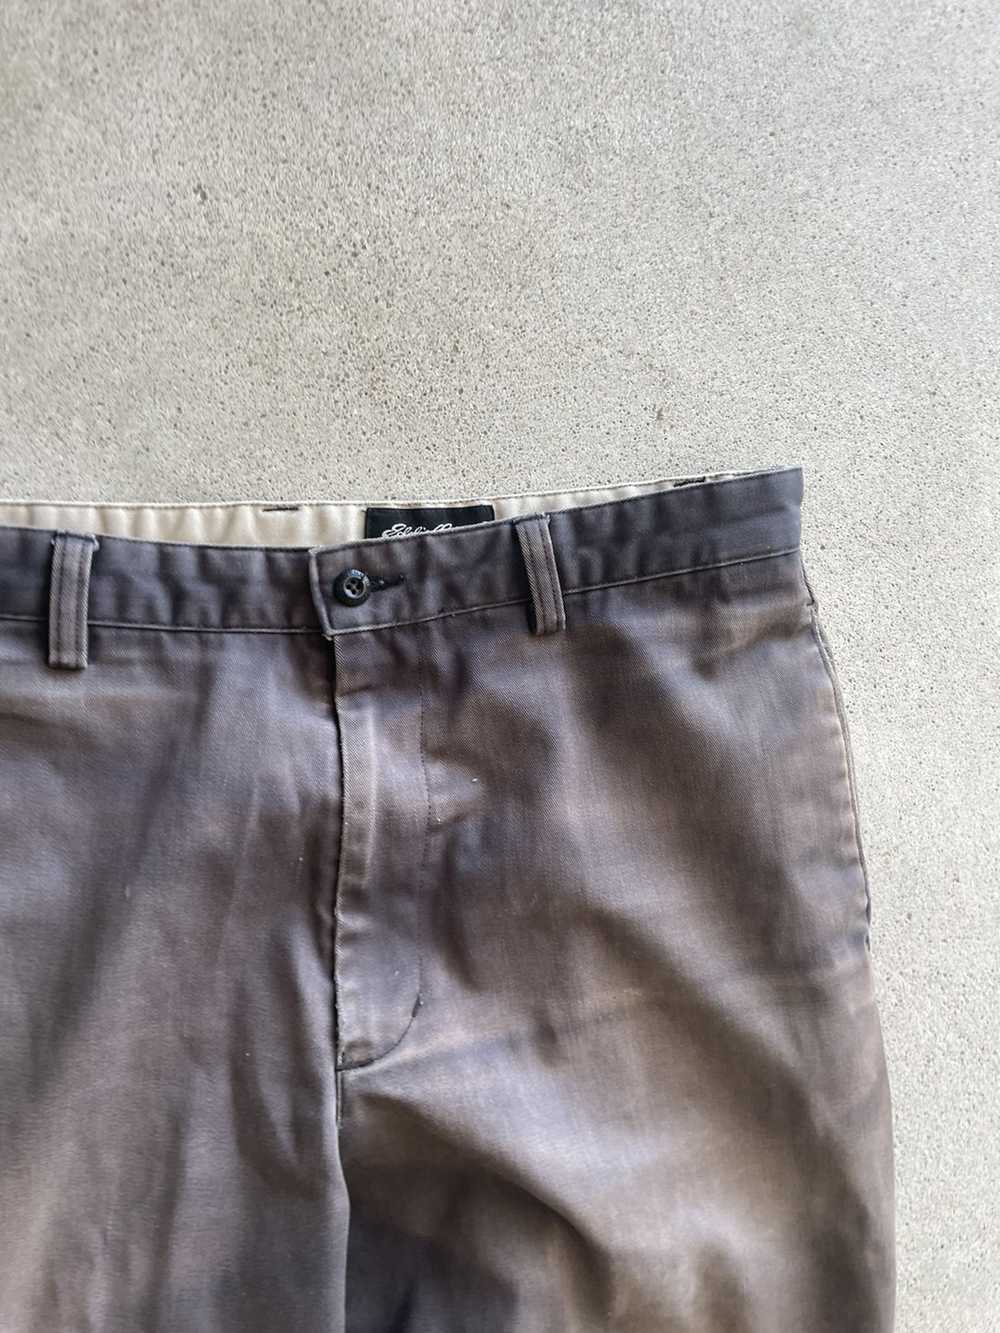 Vintage Vintage Sun Faded Khaki pants (34x29) - image 3